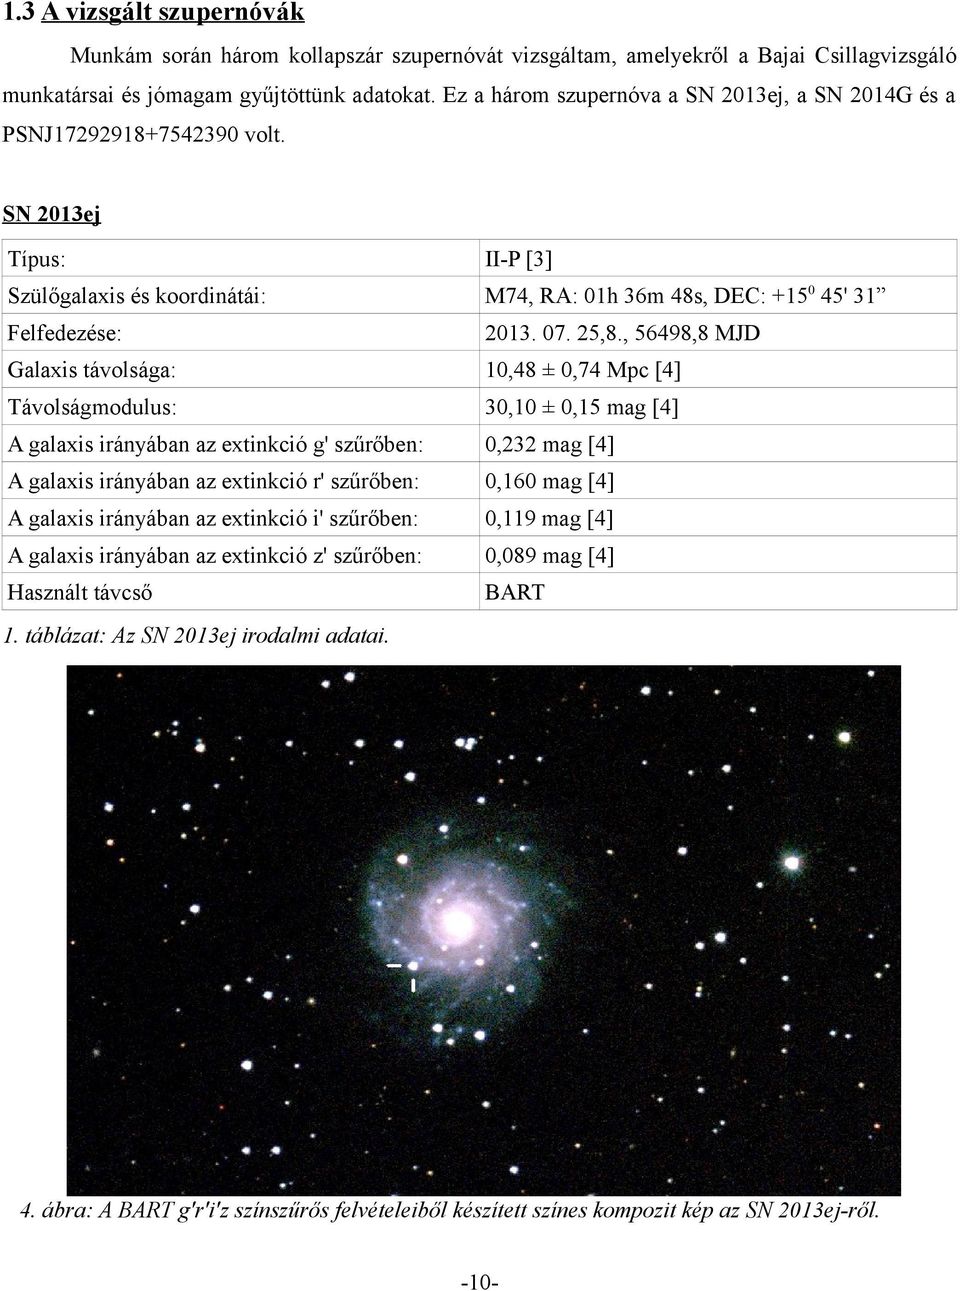 , 56498,8 MJD Galaxis távolsága: 10,48 ± 0,74 Mpc [4] Távolságmodulus: 30,10 ± 0,15 mag [4] A galaxis irányában az extinkció g' szűrőben: 0,232 mag [4] A galaxis irányában az extinkció r' szűrőben: